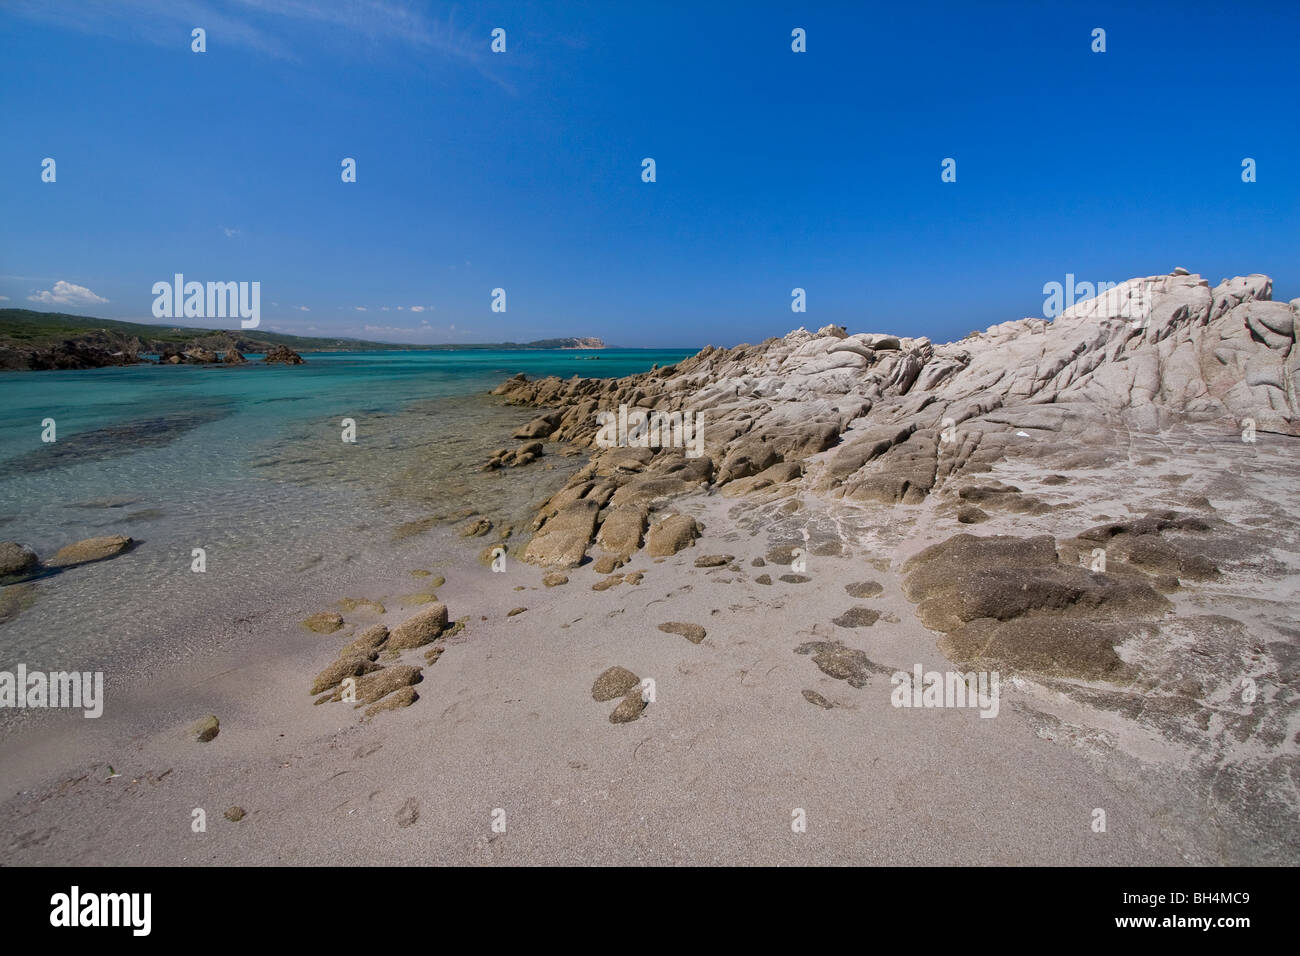 Dans l'eau bleue claire Rena Maiore plage, mer Méditerranée. La Sardaigne, Italie Banque D'Images